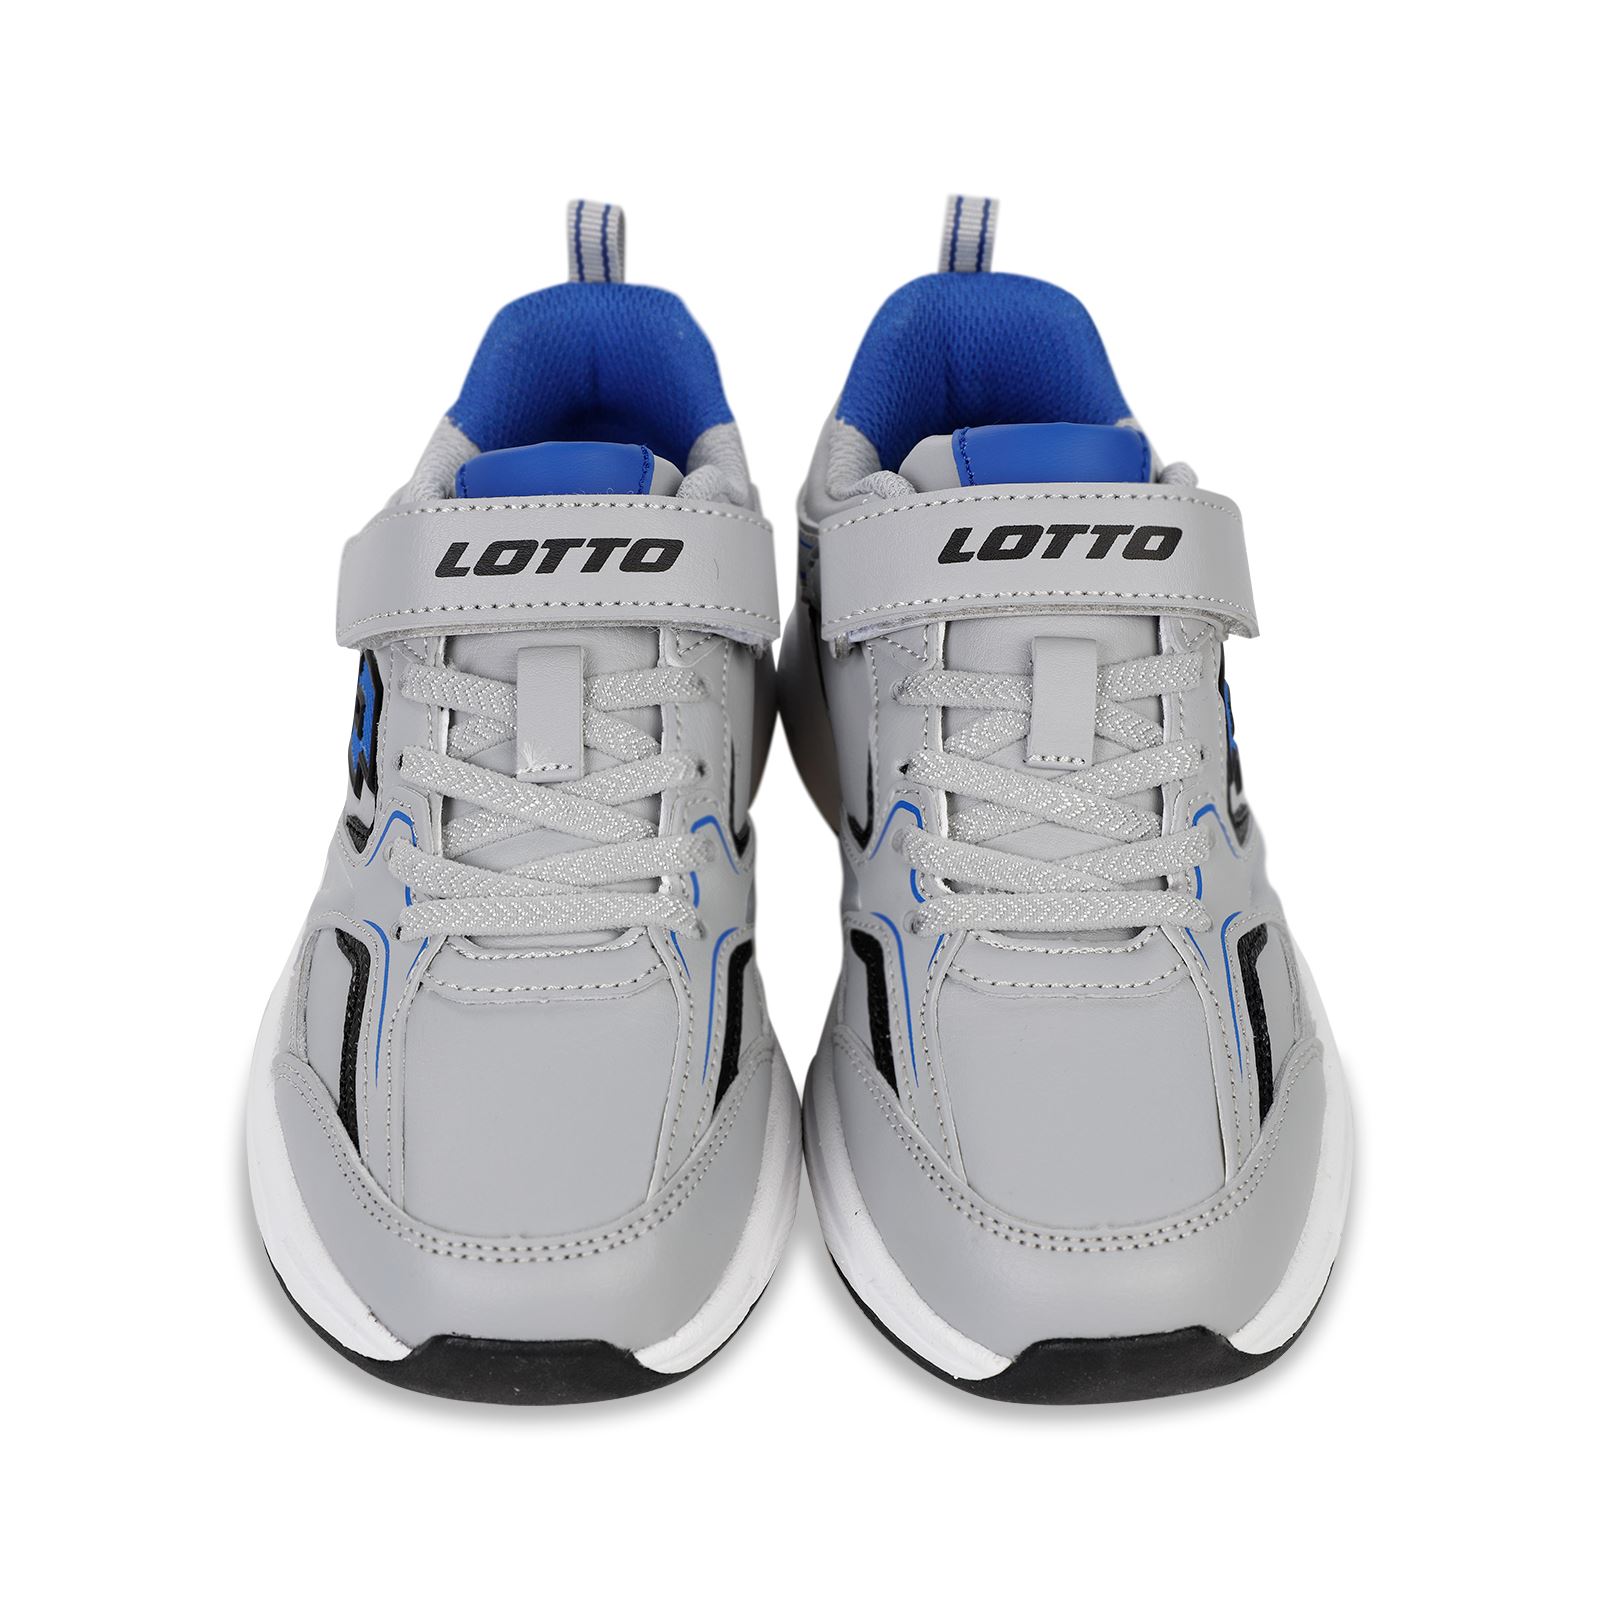 Lotto Life's Erkek Çocuk Spor Ayakkabı 31-35 Numara Lacivert